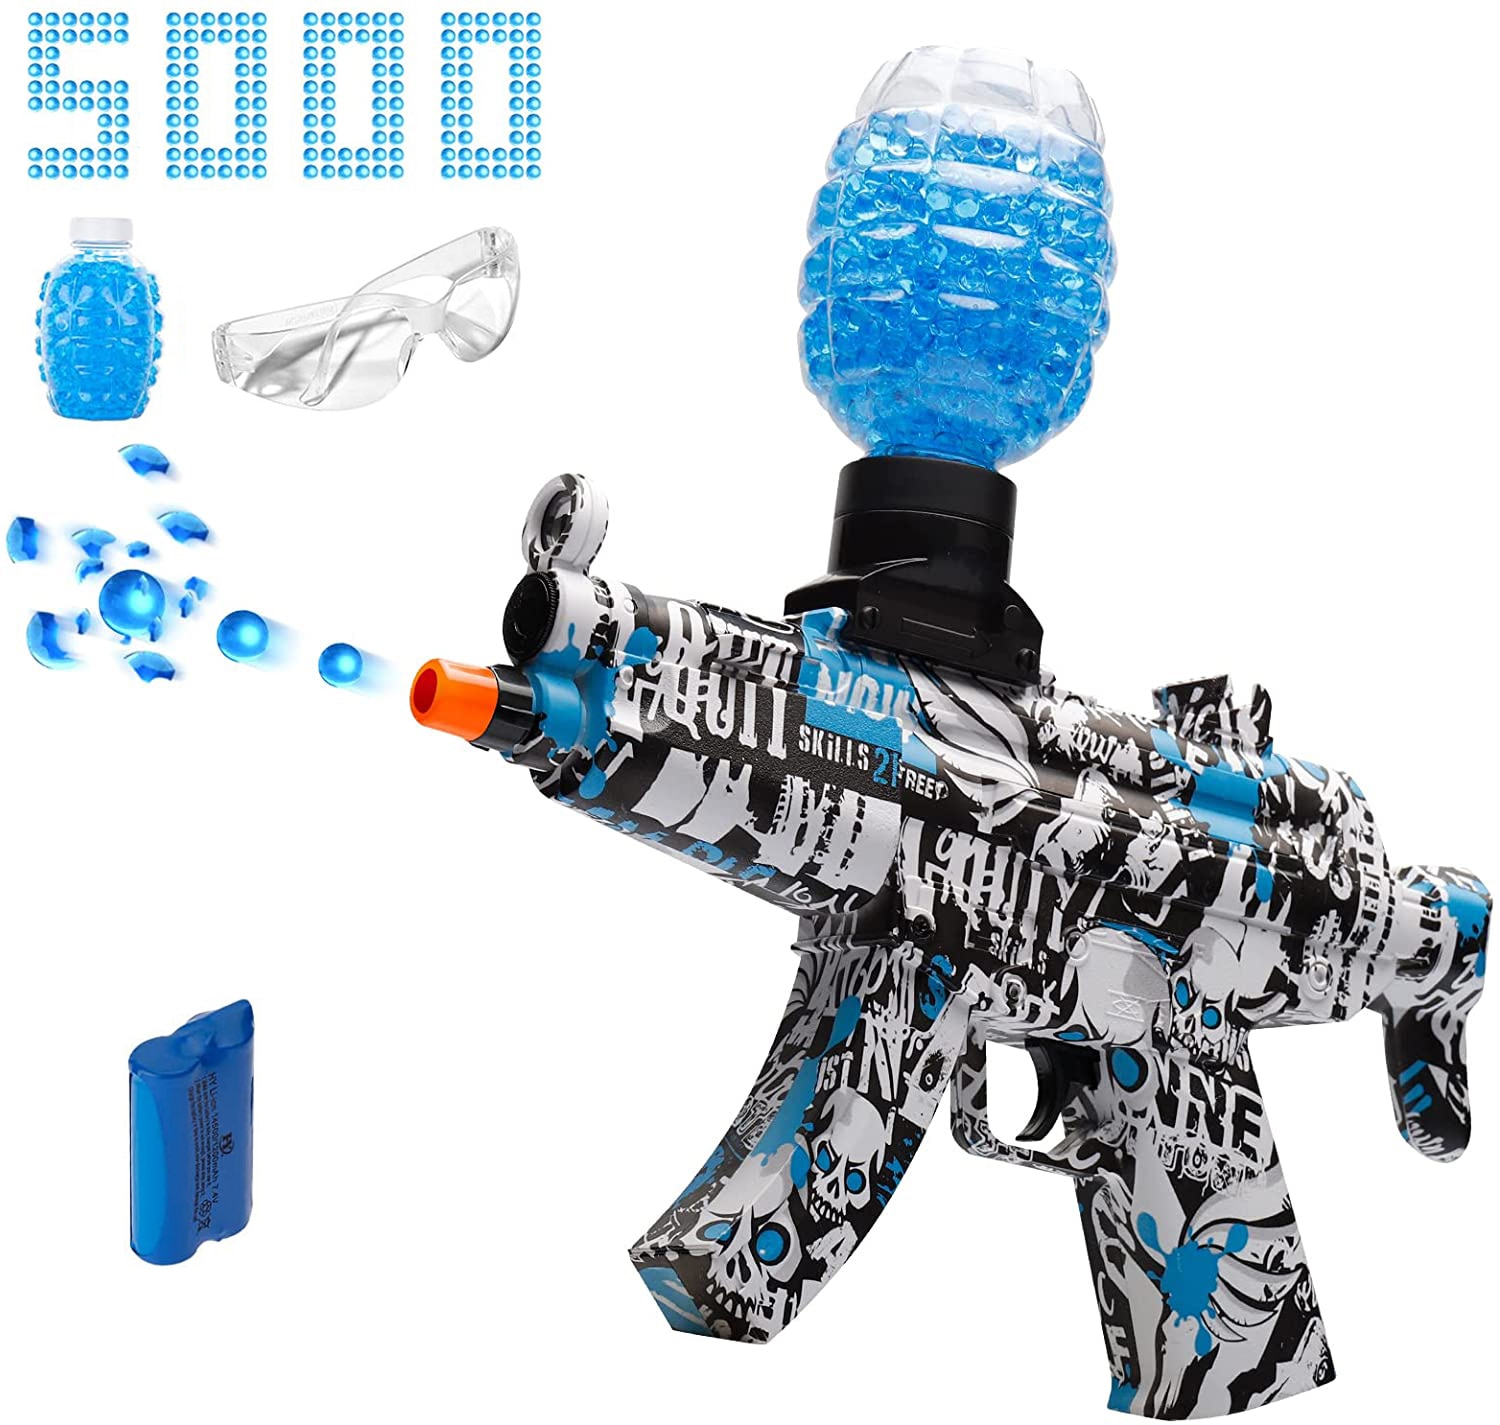 MP5 Gel Blaster | Electric Splatter Ball Blaster For Outdoor Team Shooting Games For Boys Gift